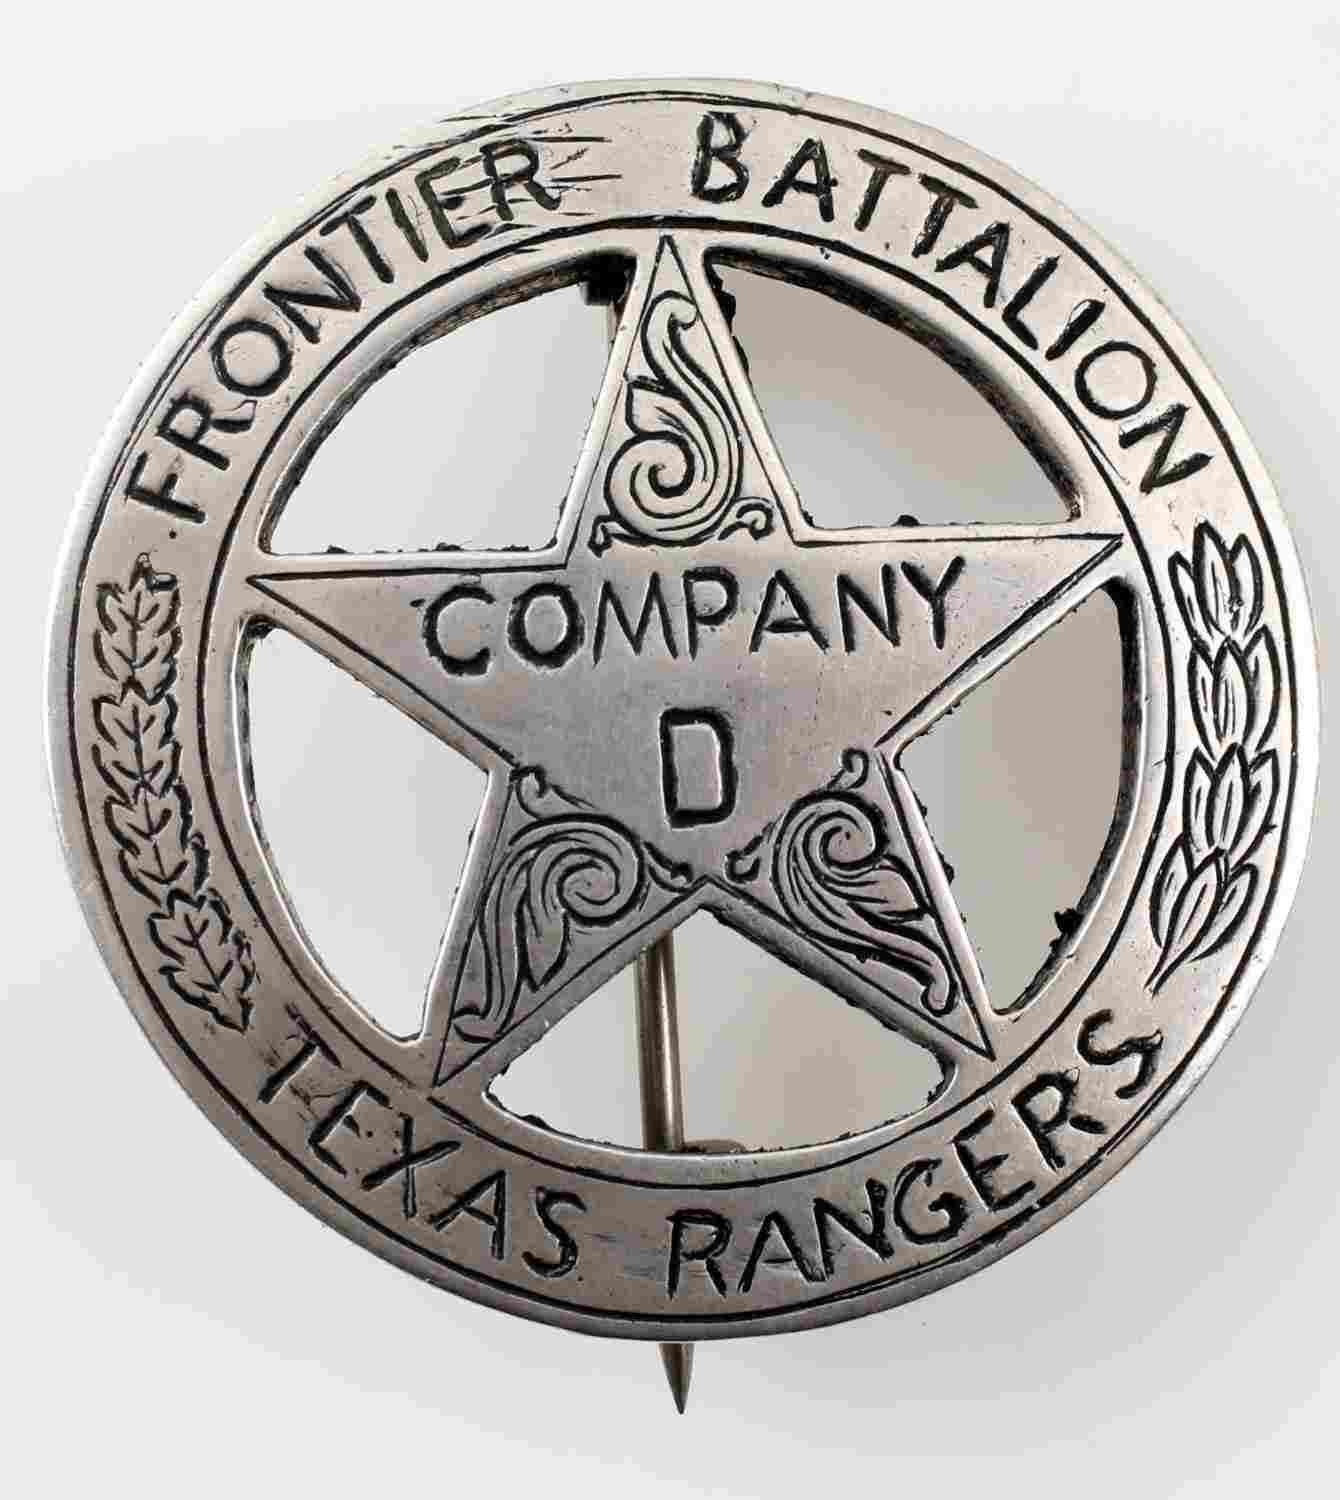 Texas Ranger Division Pin Badge